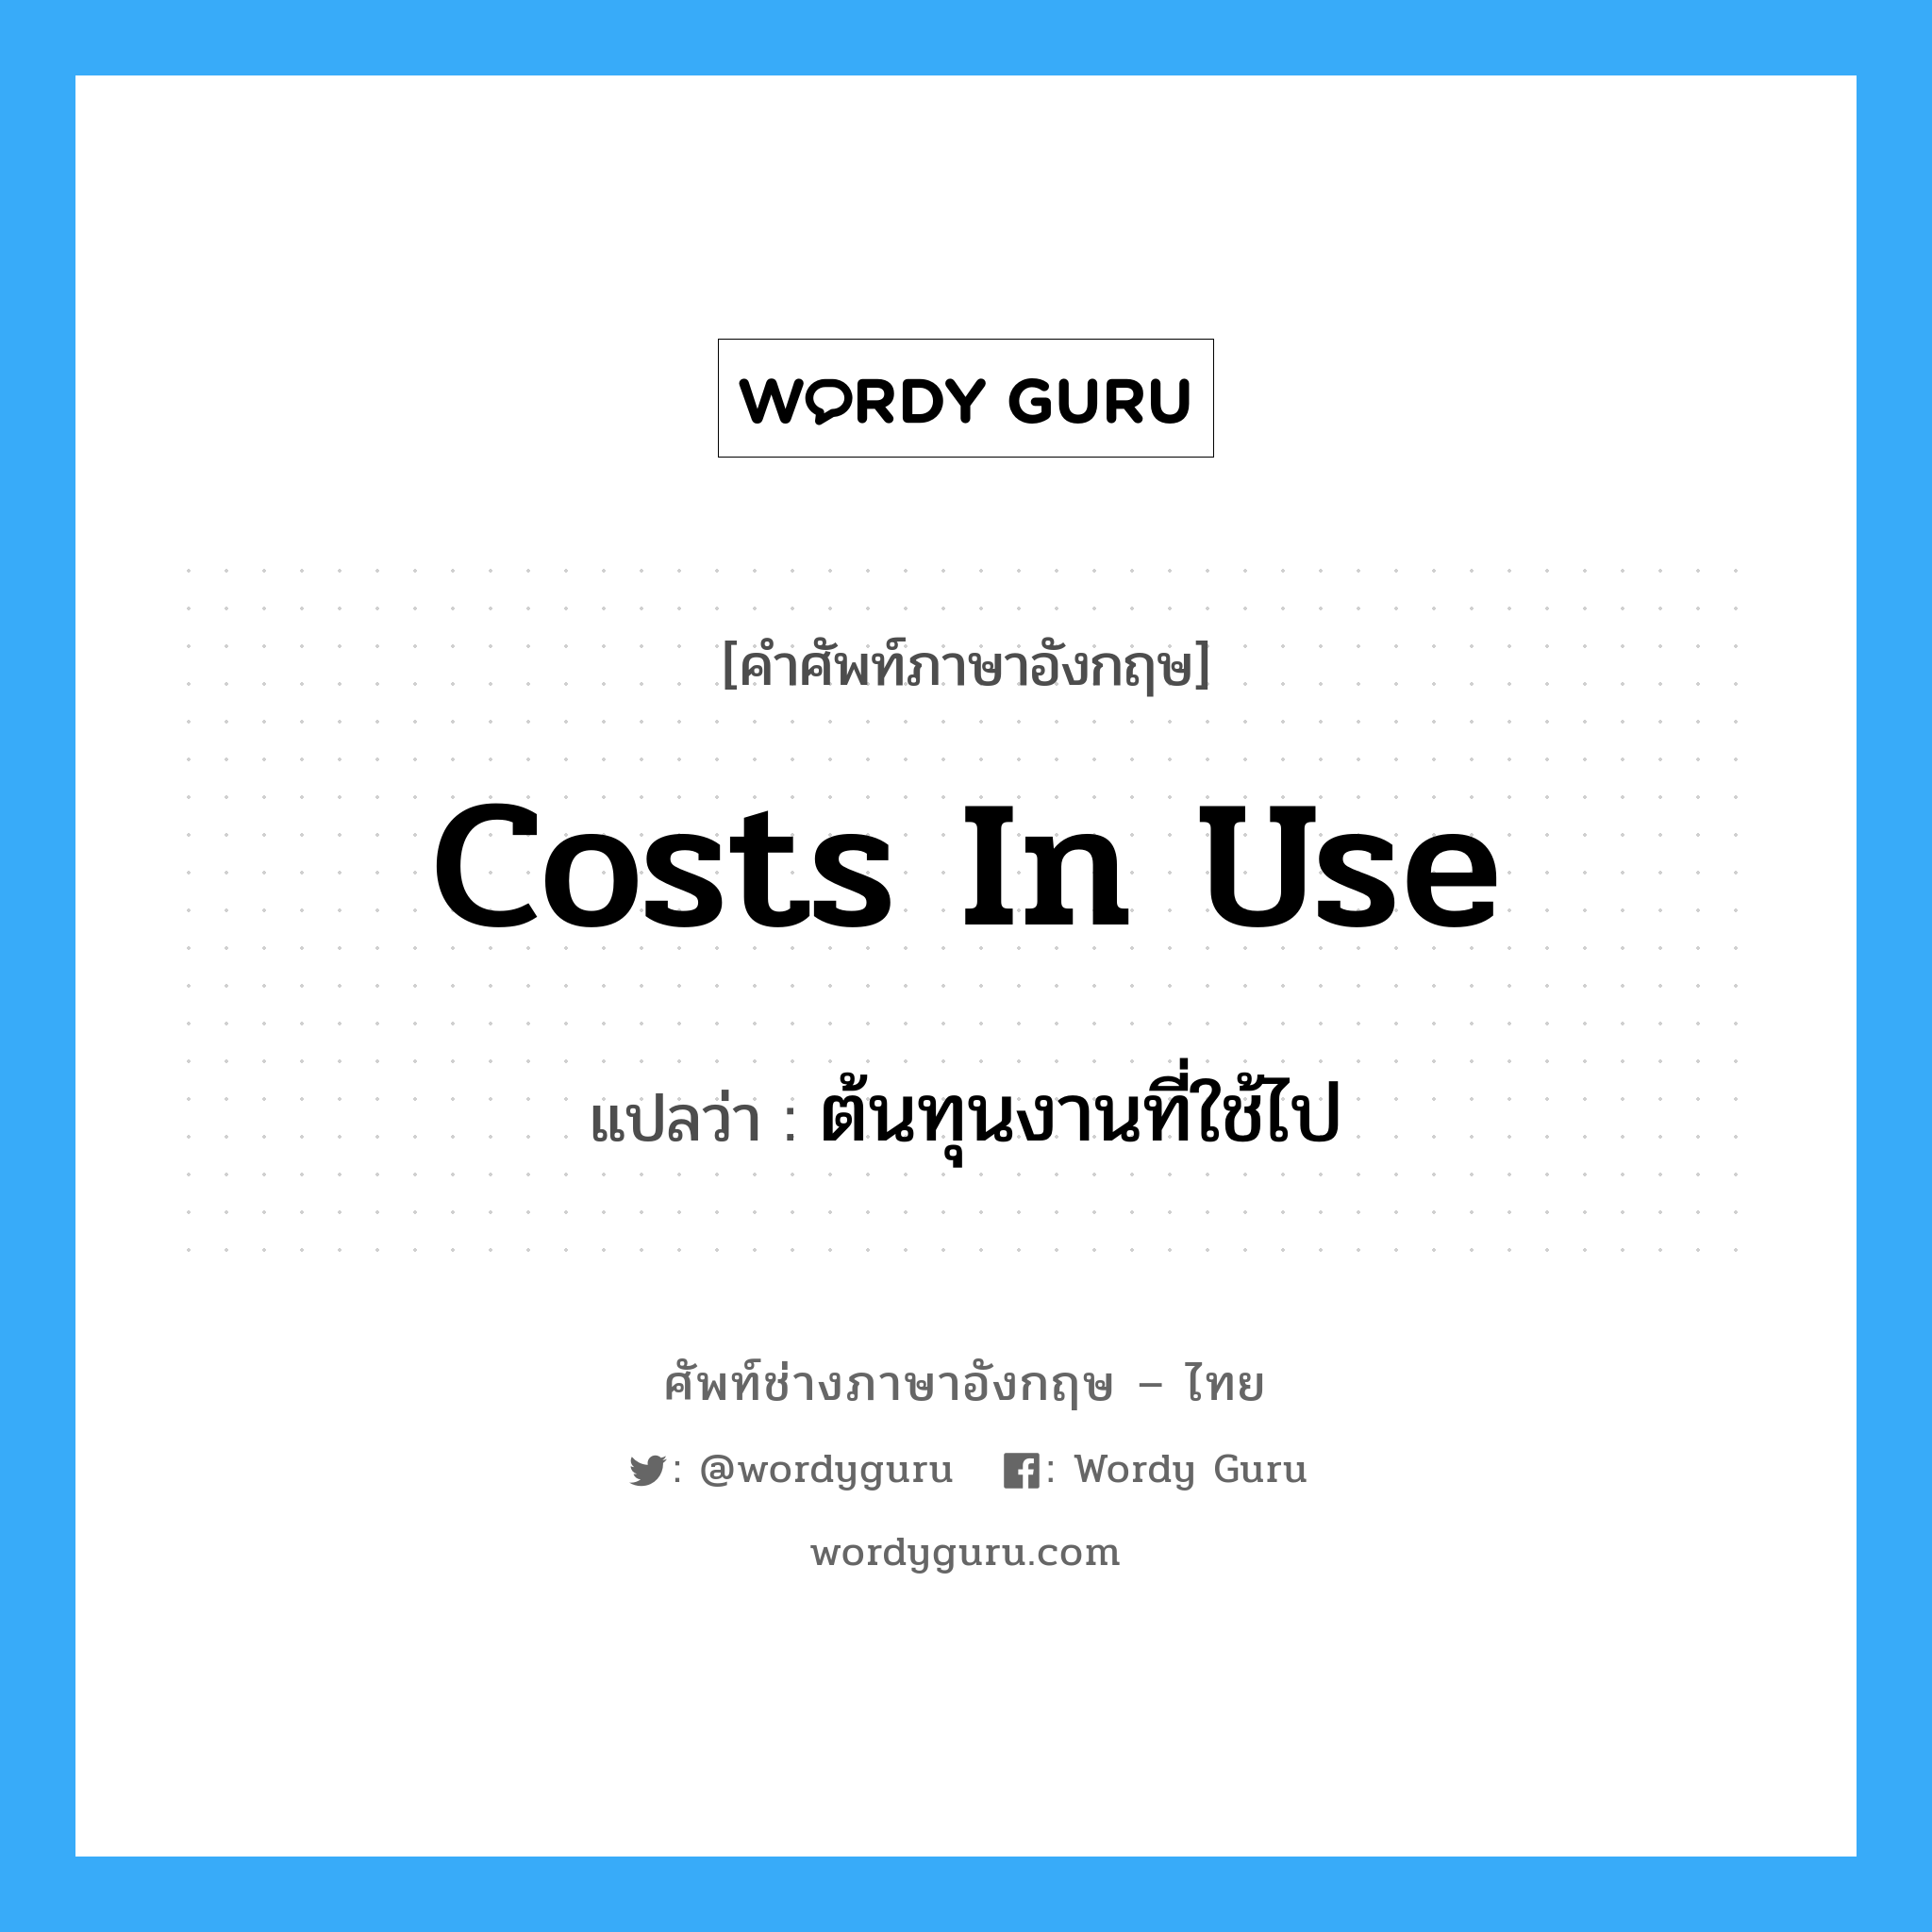 Costs in Use แปลว่า?, คำศัพท์ช่างภาษาอังกฤษ - ไทย Costs in Use คำศัพท์ภาษาอังกฤษ Costs in Use แปลว่า ต้นทุนงานที่ใช้ไป